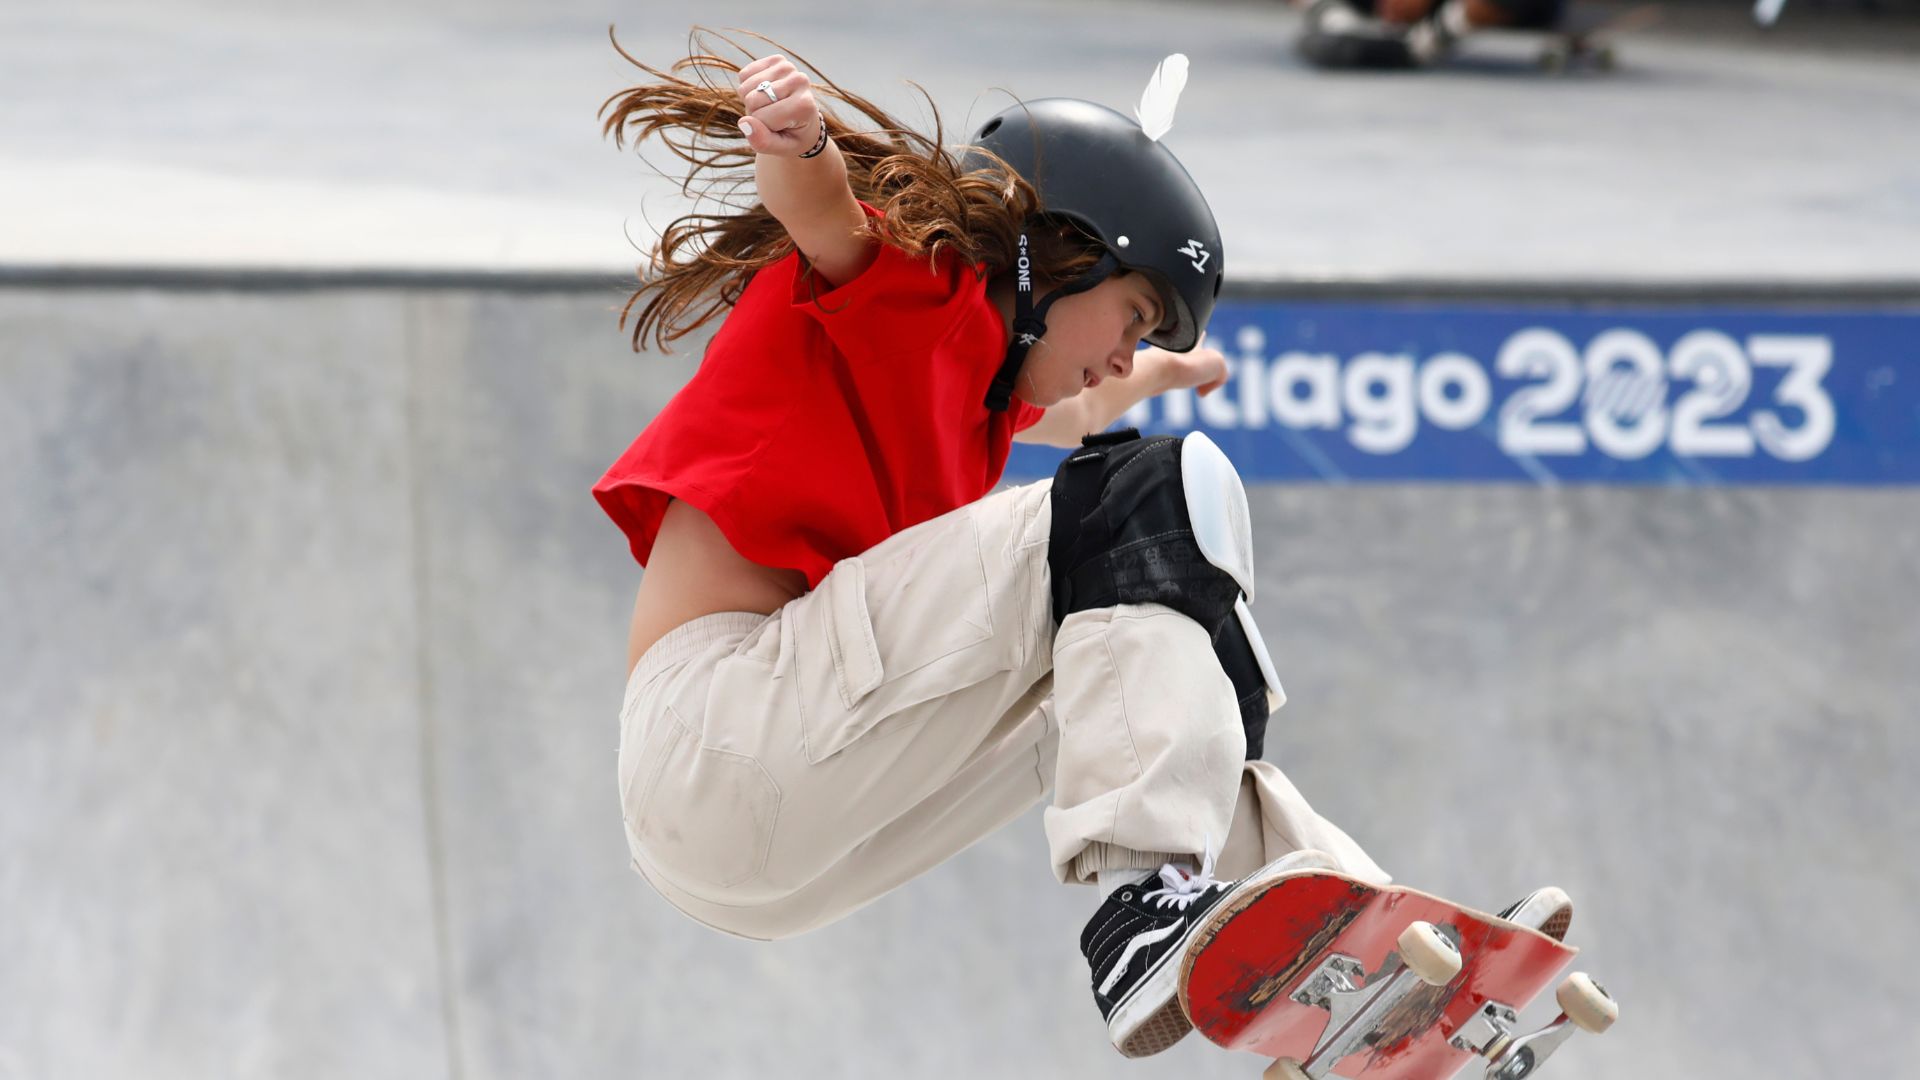 Oro en Skateboarding: Canadá ganó el panamericano del park femenino